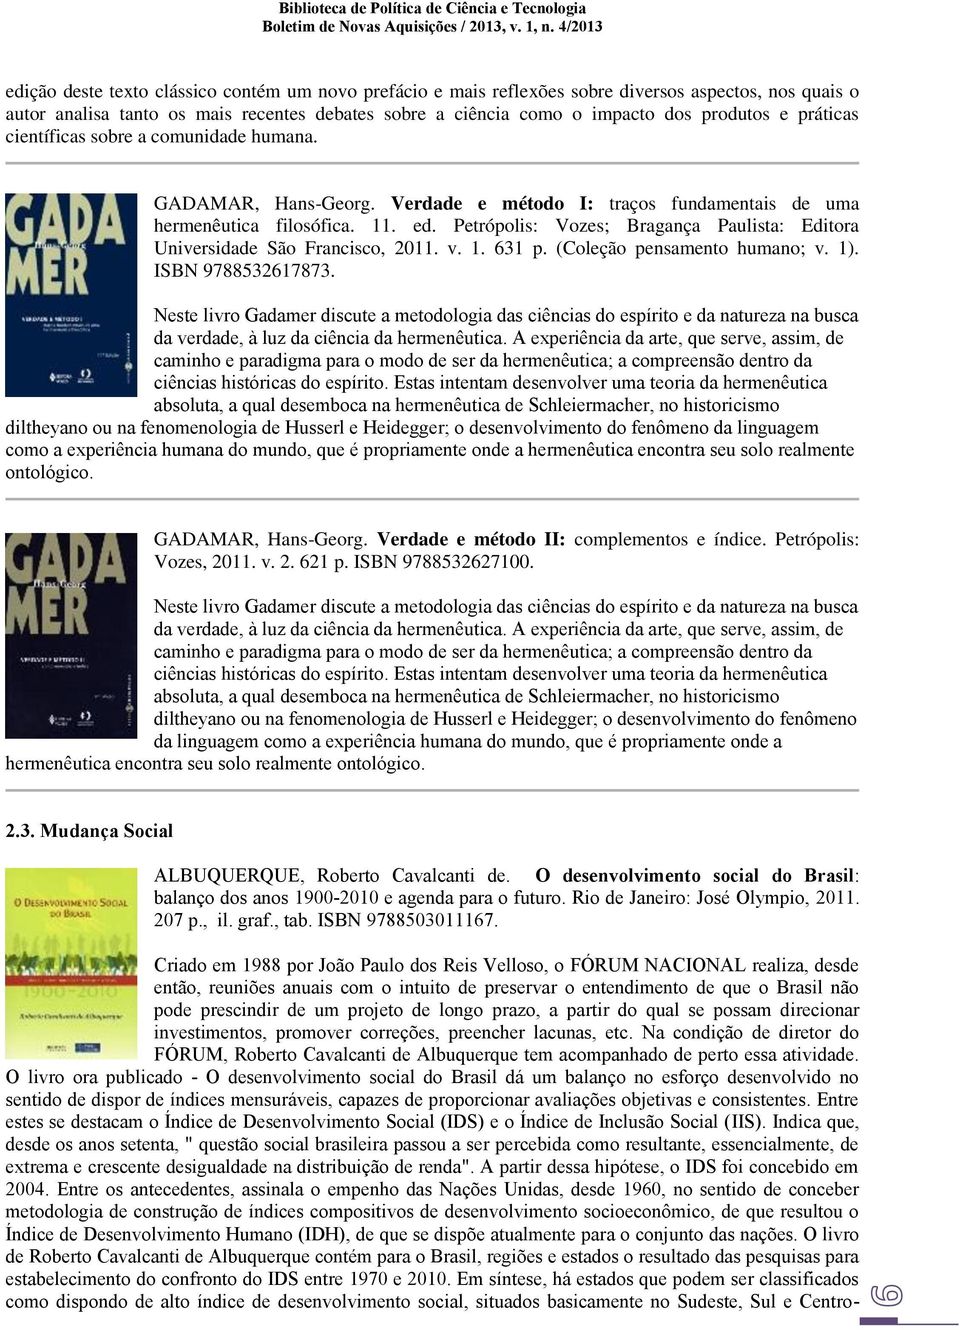 Petrópolis: Vozes; Bragança Paulista: Editora Universidade São Francisco, 2011. v. 1. 631 p. (Coleção pensamento humano; v. 1). ISBN 9788532617873.